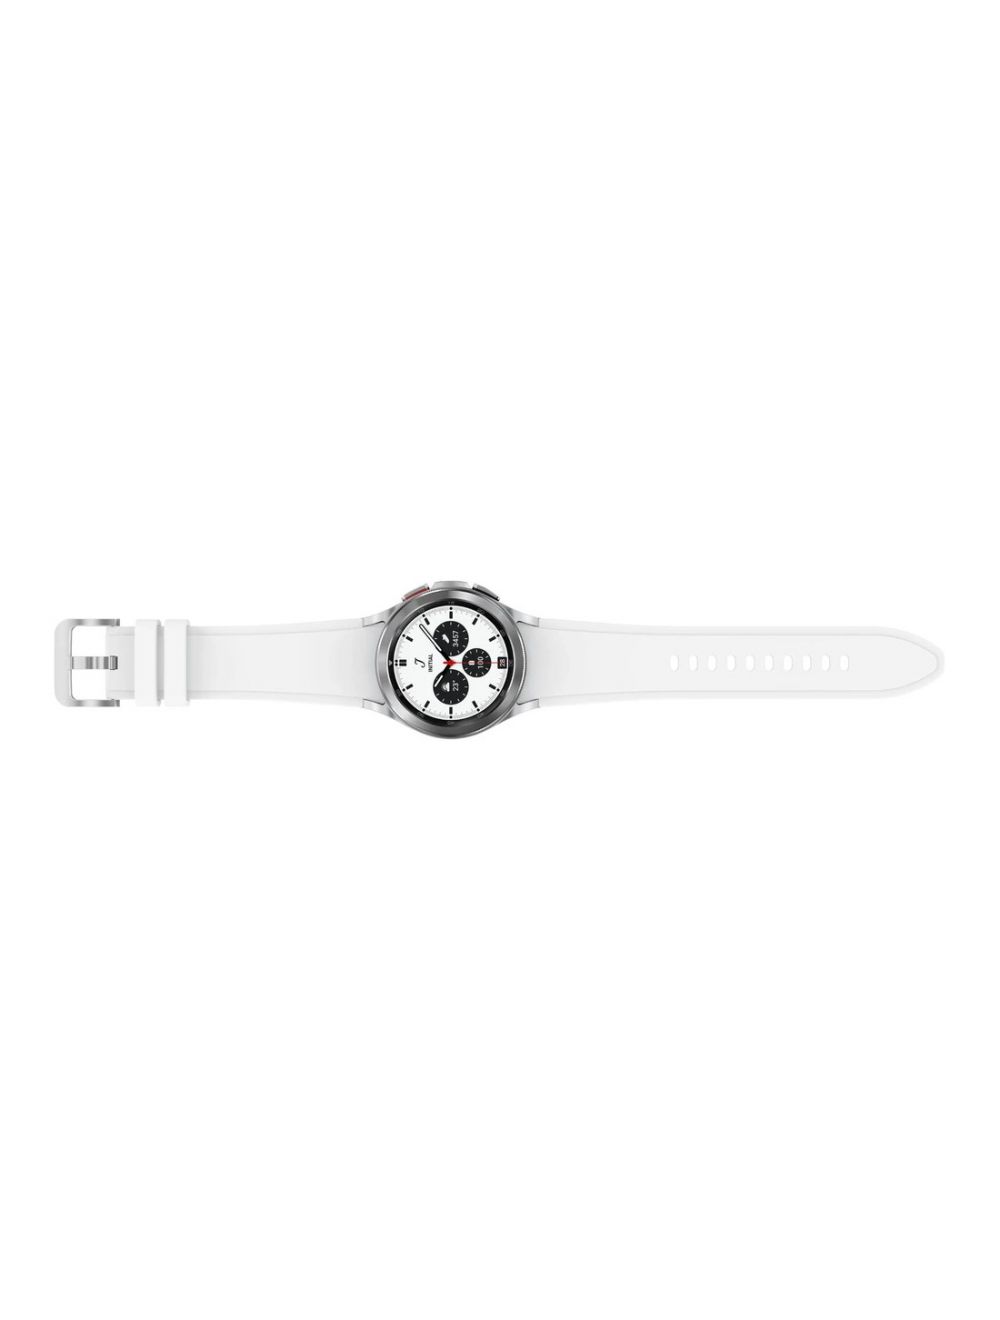 Samsung Galaxy Watch 4 Classic (42mm) Bluetooth SM-R880 - Silver